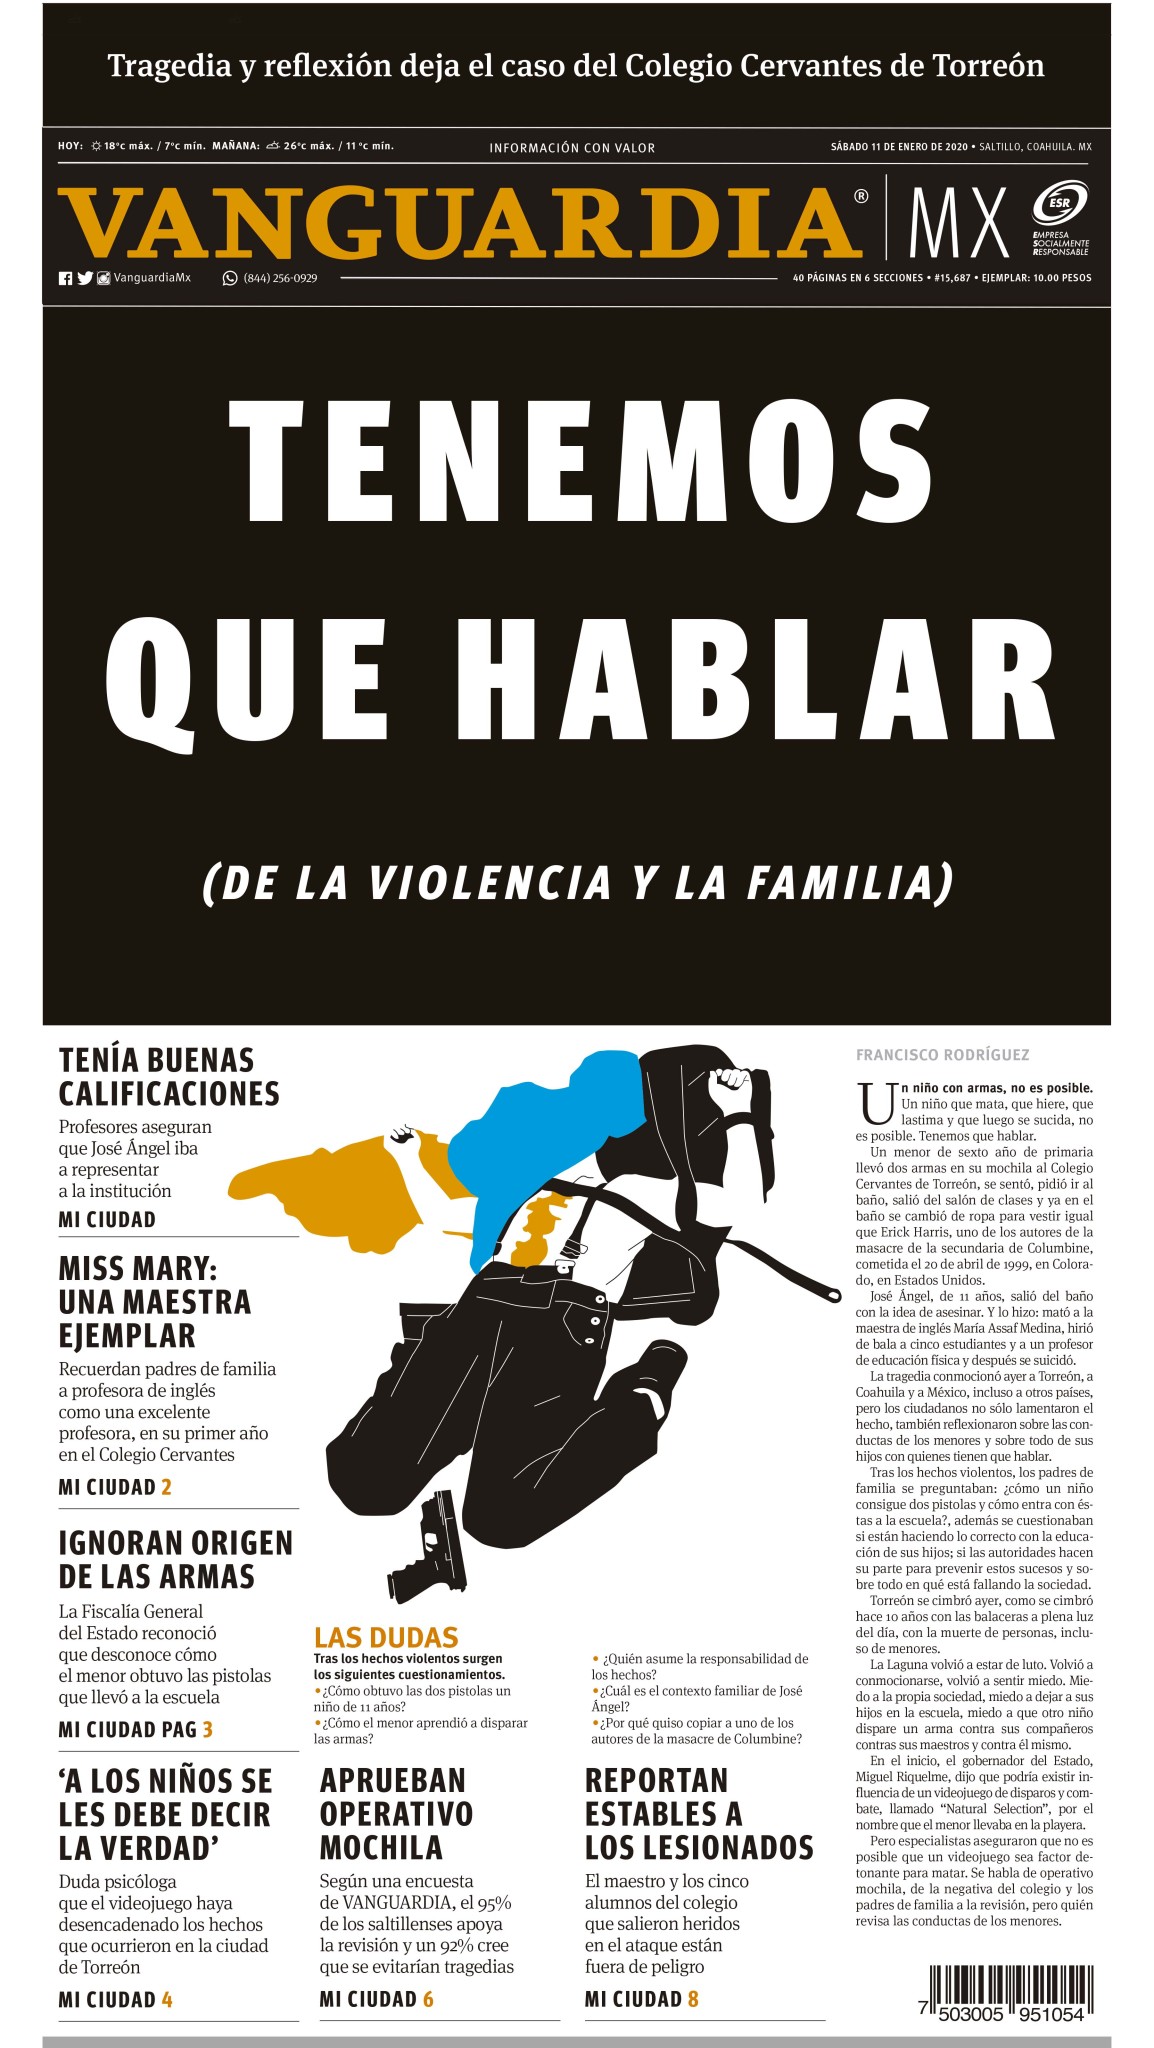 $!Colegio Cervantes de Torreón: Reconstruyen en libro la tragedia que cimbró al país